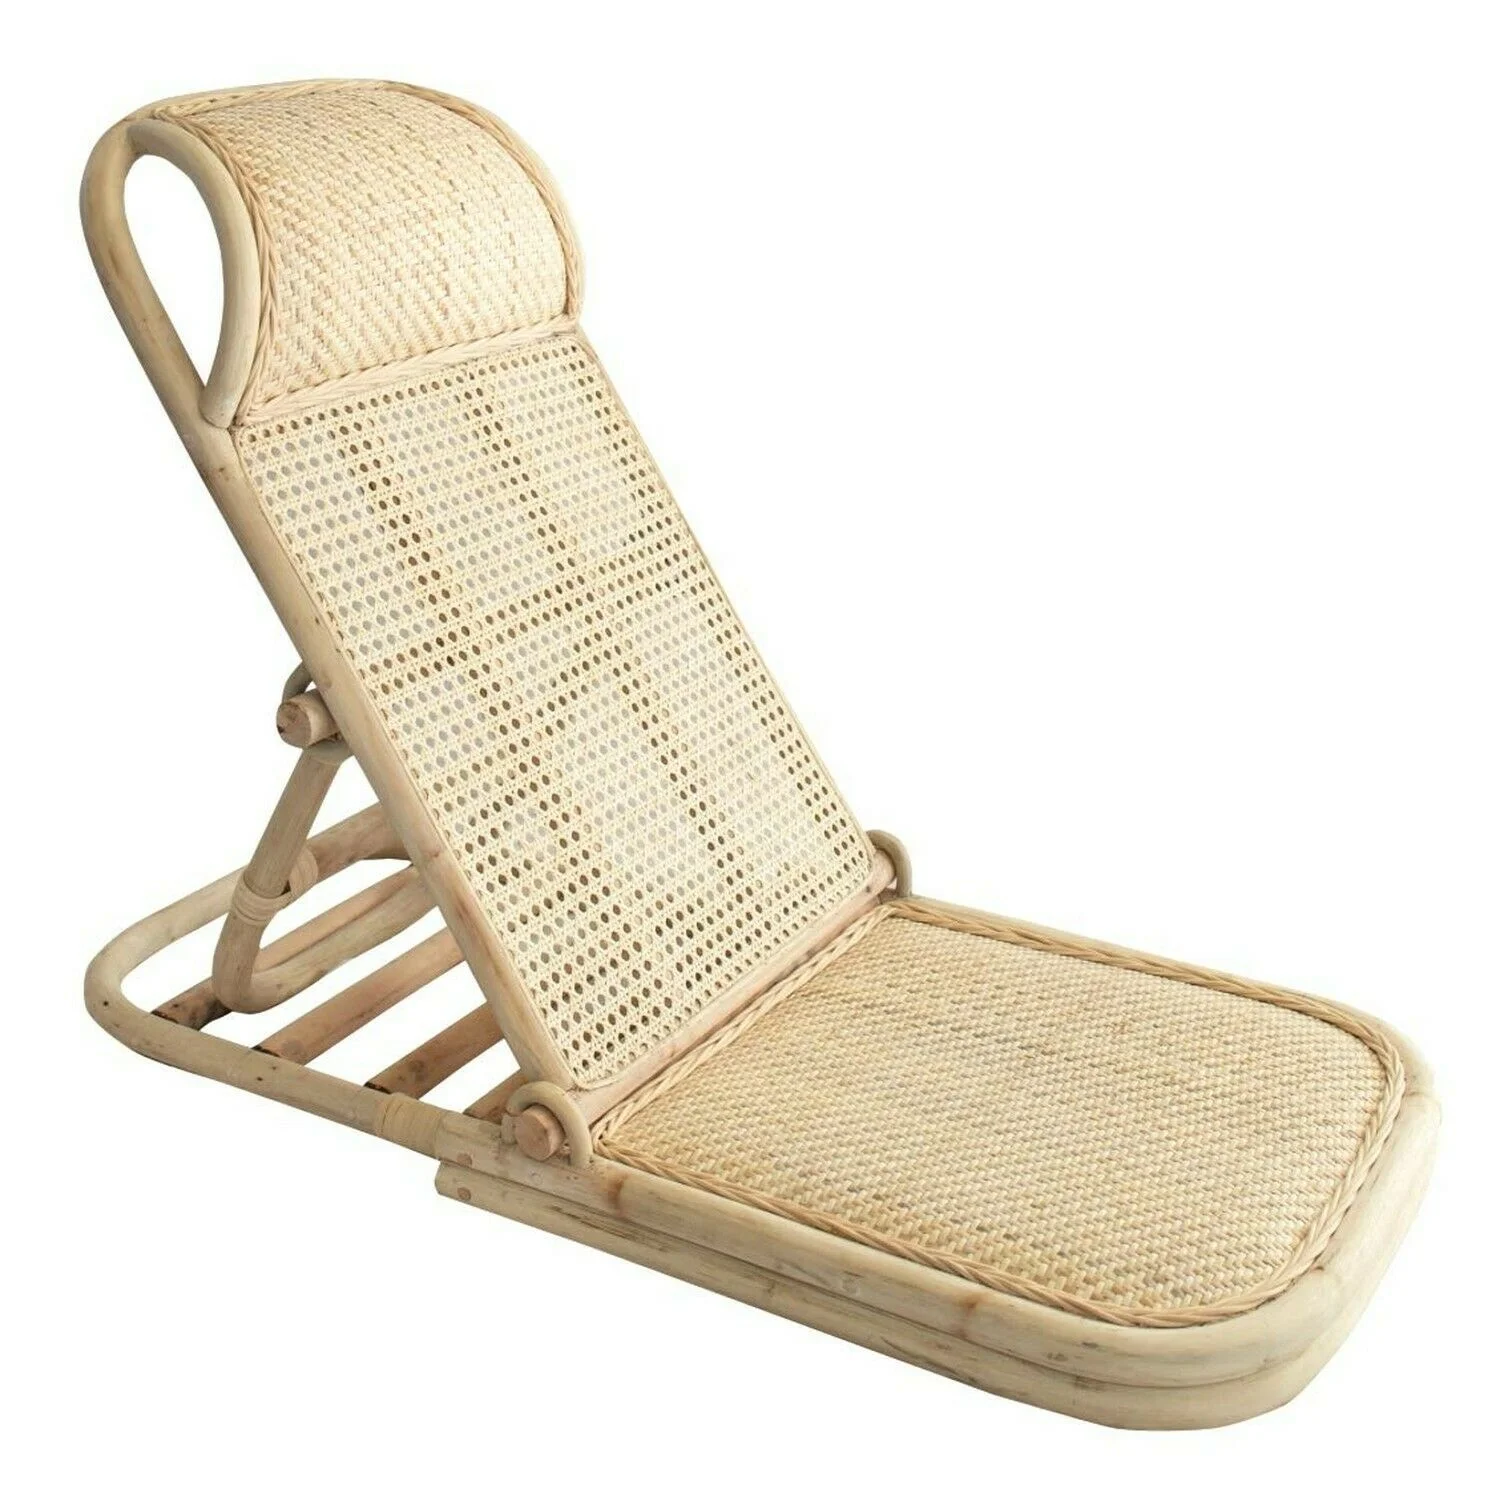 
Outdoor natural handwoven rattan recliner chair sun beach lounger small rattan folding beach chair folding 